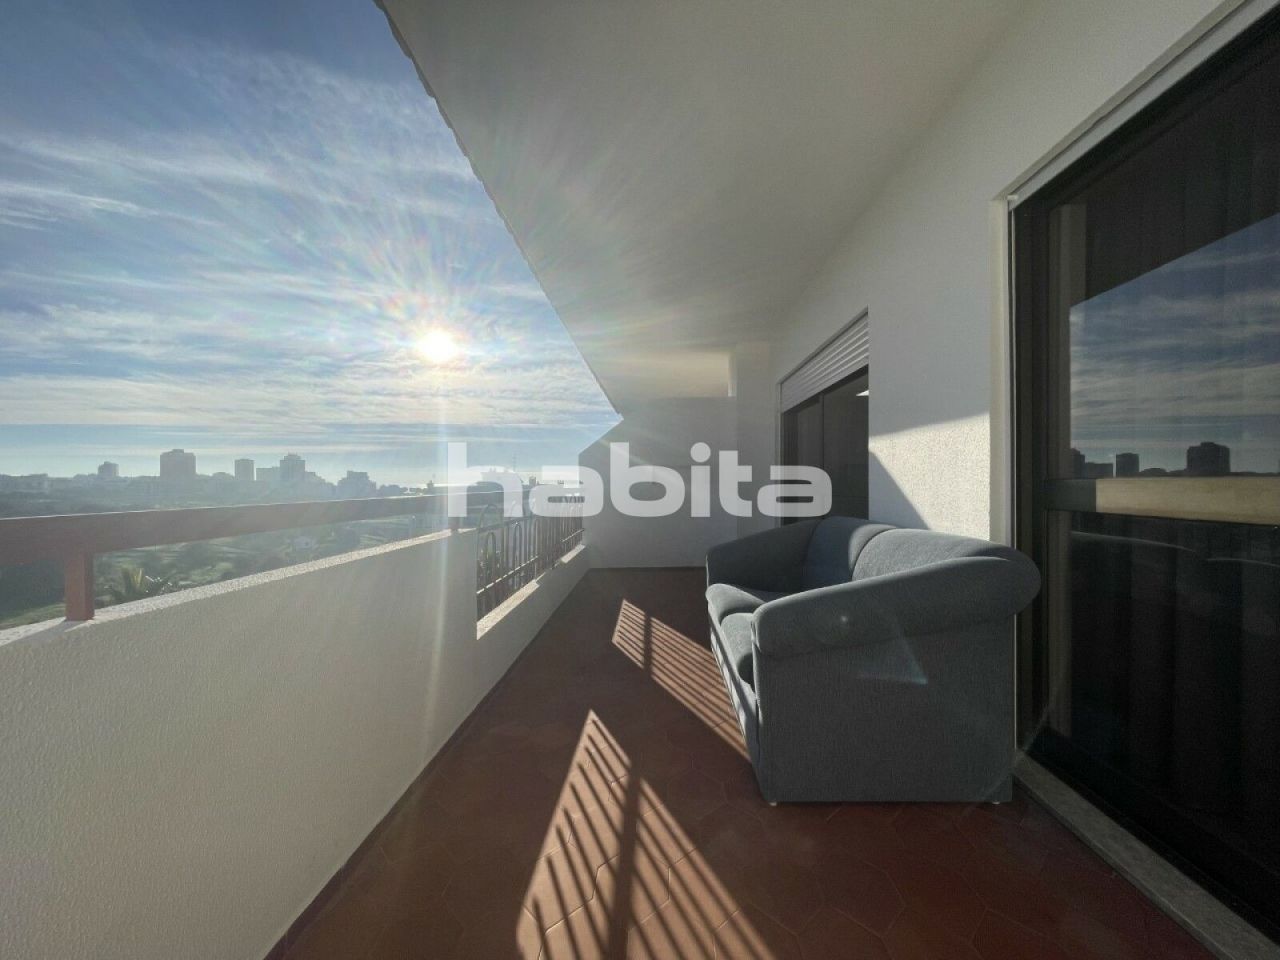 Apartment in Portimao, Portugal, 85 sq.m - picture 1